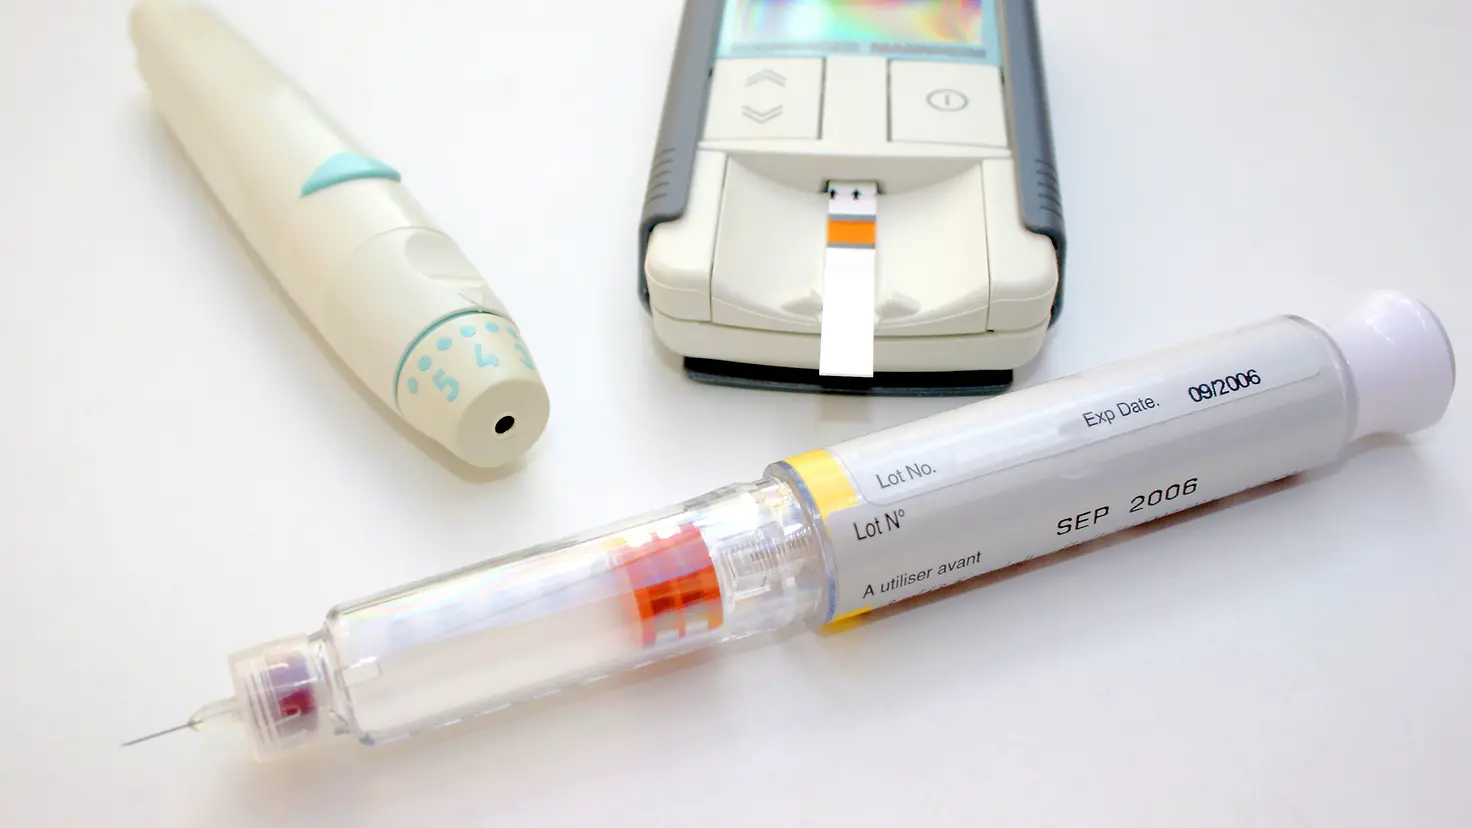 Insulinpen und elektronisches Messgerät mit Teststreifen